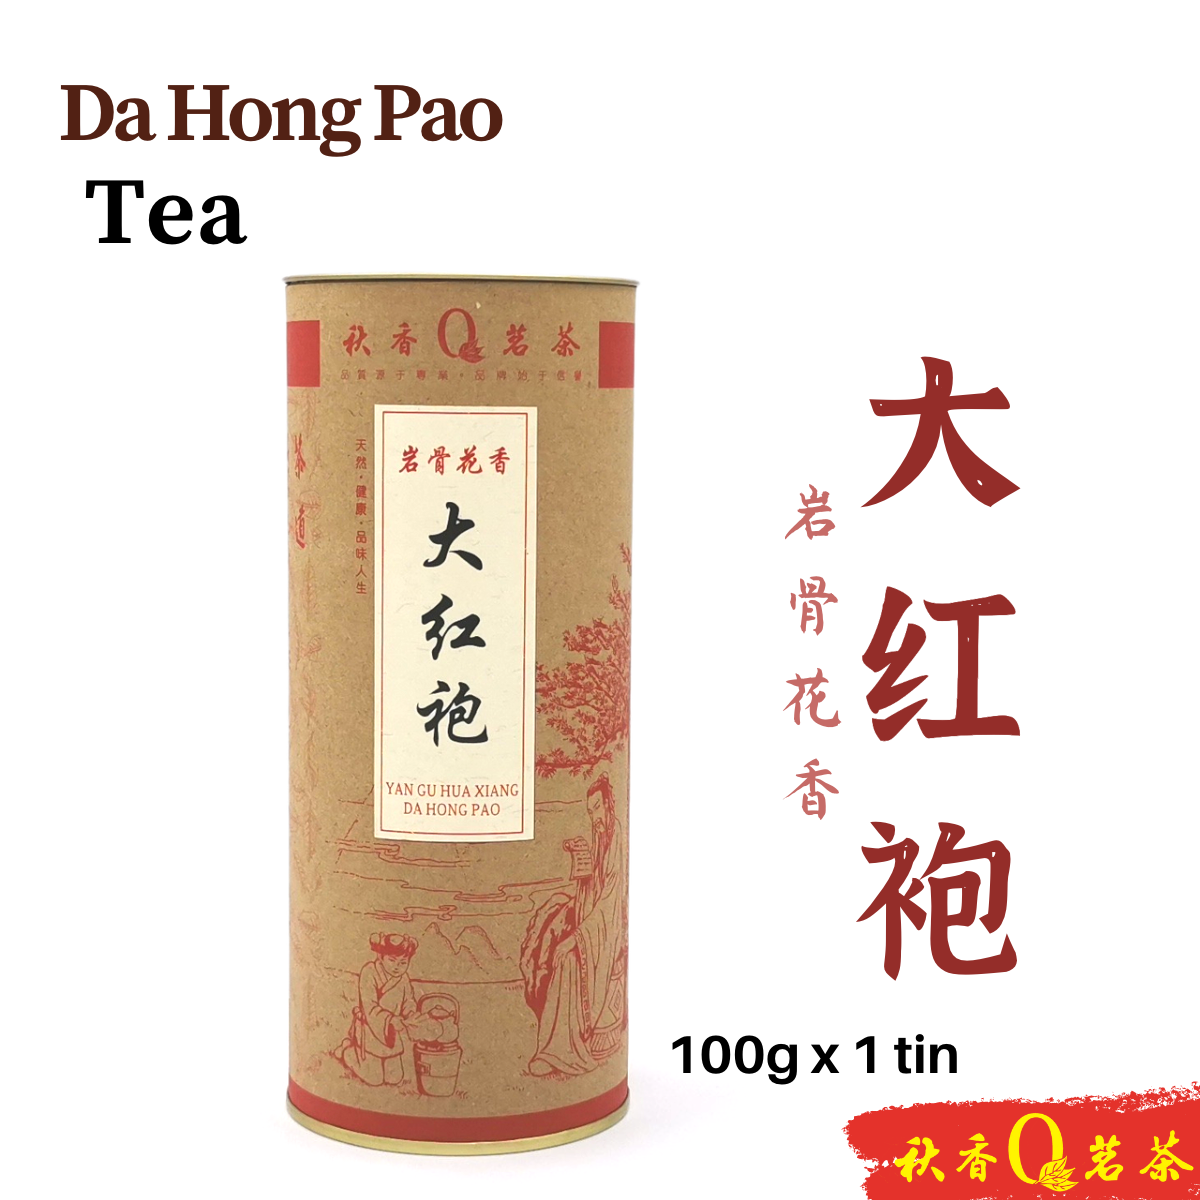 岩骨花香大红袍 Da Hong Pao tea (Yan Gu Hua Xiang) 【100g】|【武夷岩茶 WuYi Rock Tea】